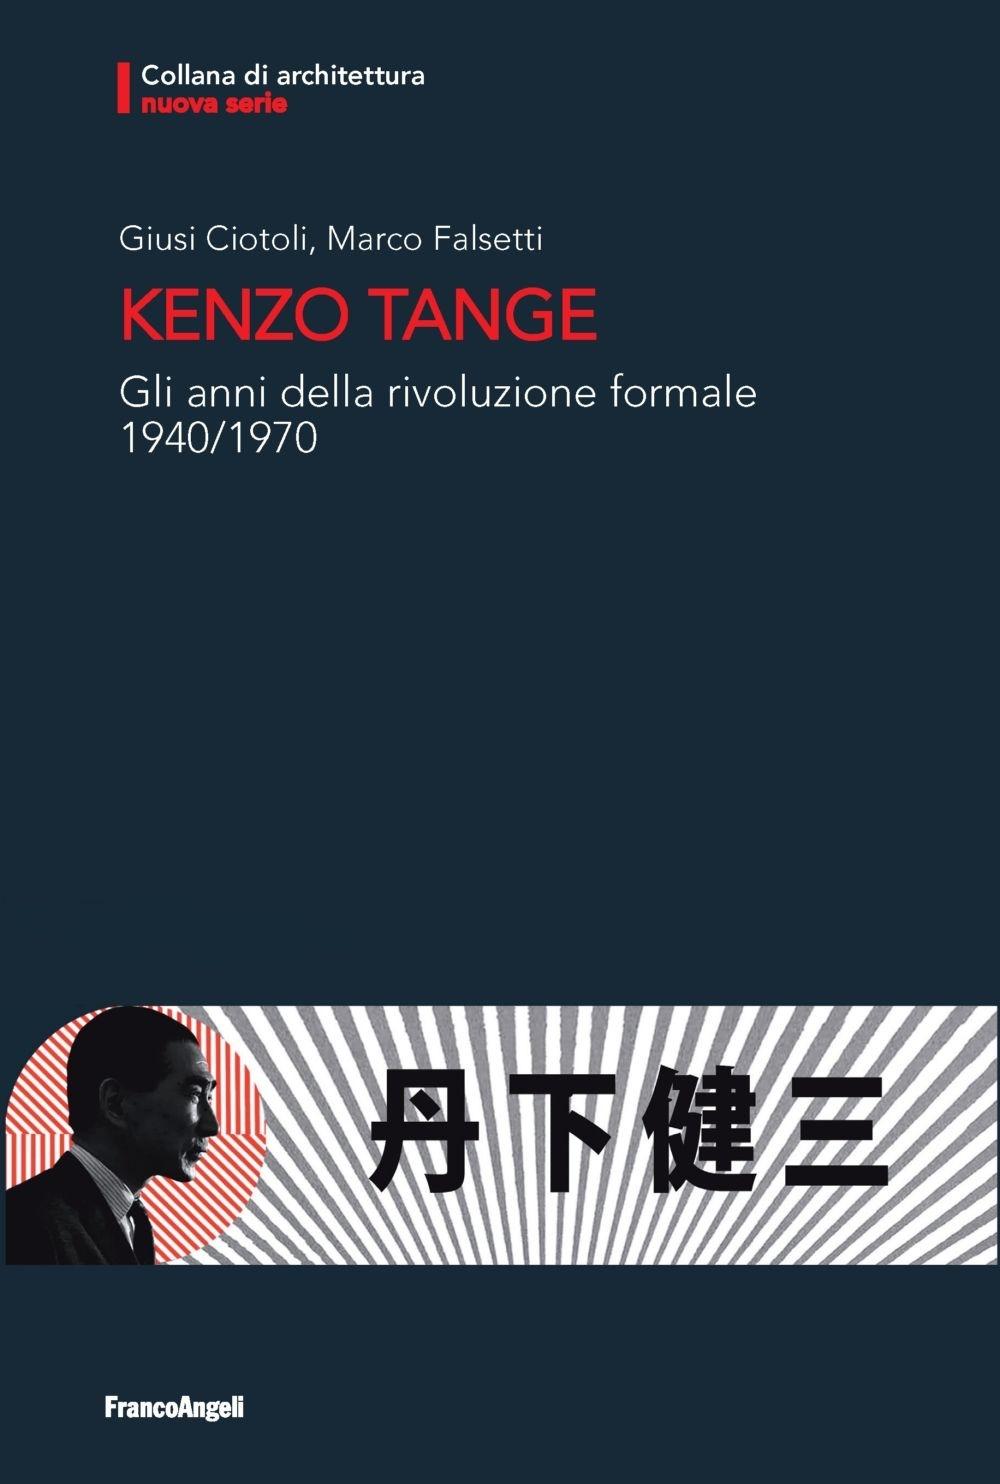 TANGE: KENZO TANGE. GLI ANNI DELLA RIVOLUZIONE FORMALE. 